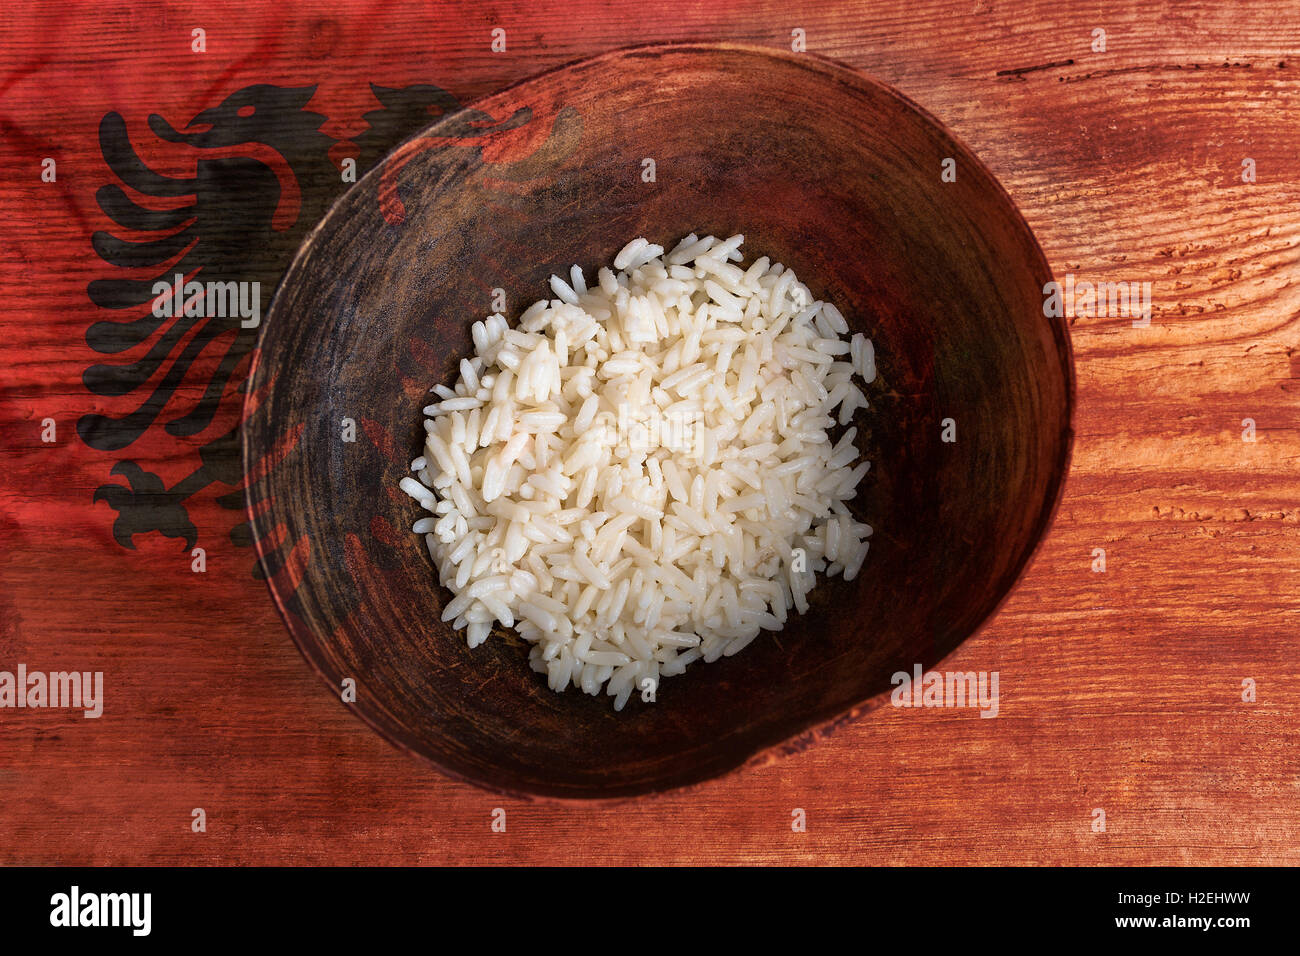 Armut-Konzept, Schüssel Reis mit albanischen Flagge auf hölzernen Hintergrund Stockfoto